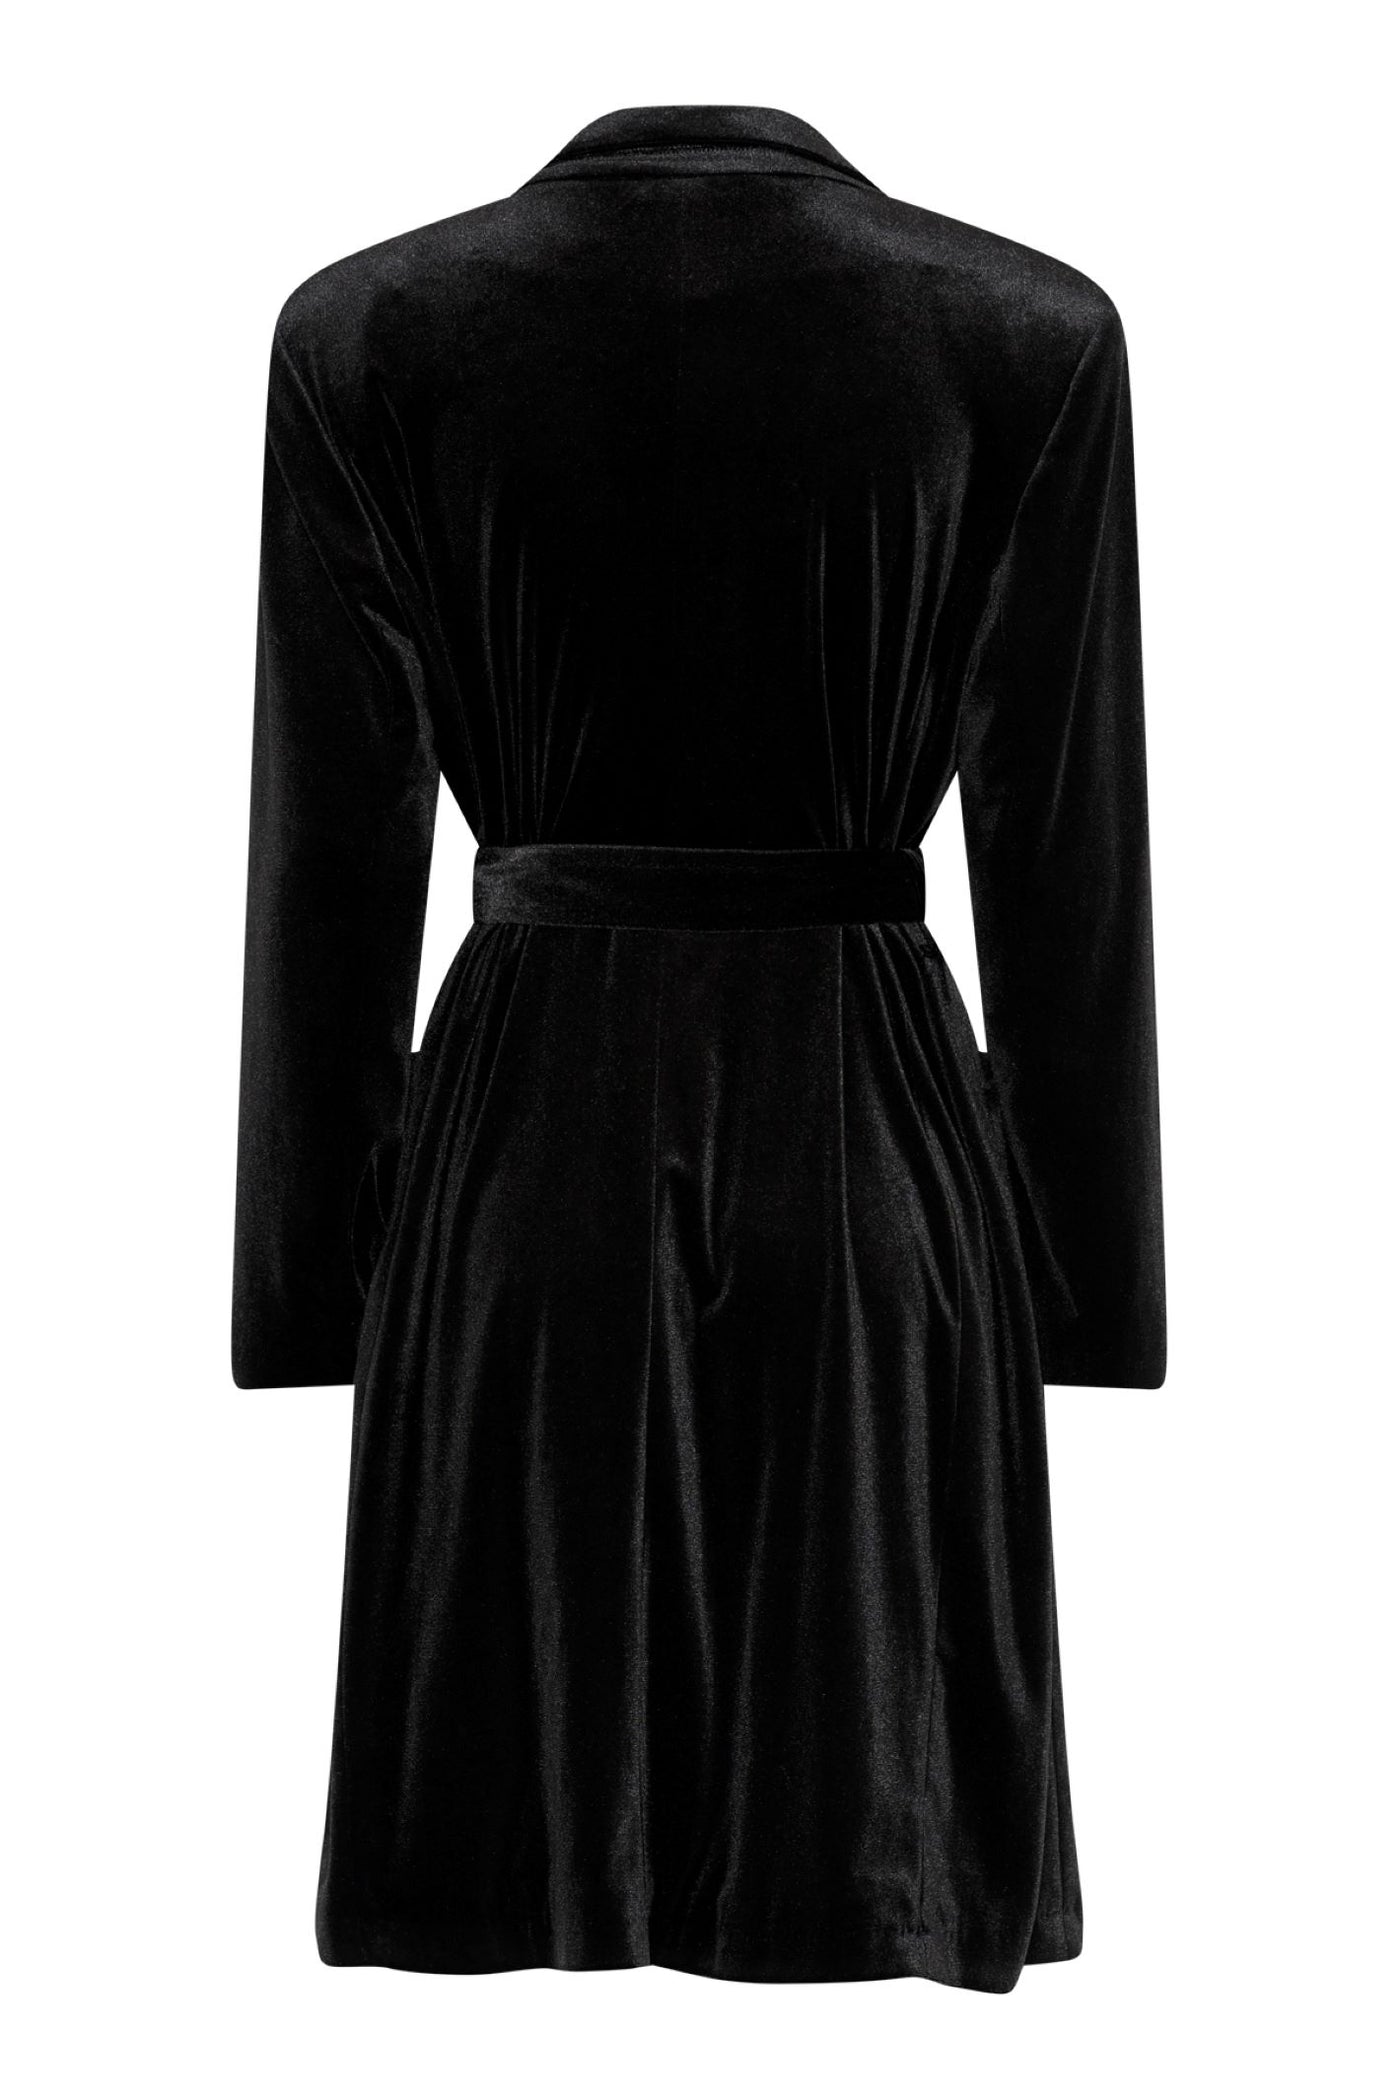 Tia 77614 Long Velvet Sleeved Black Coat